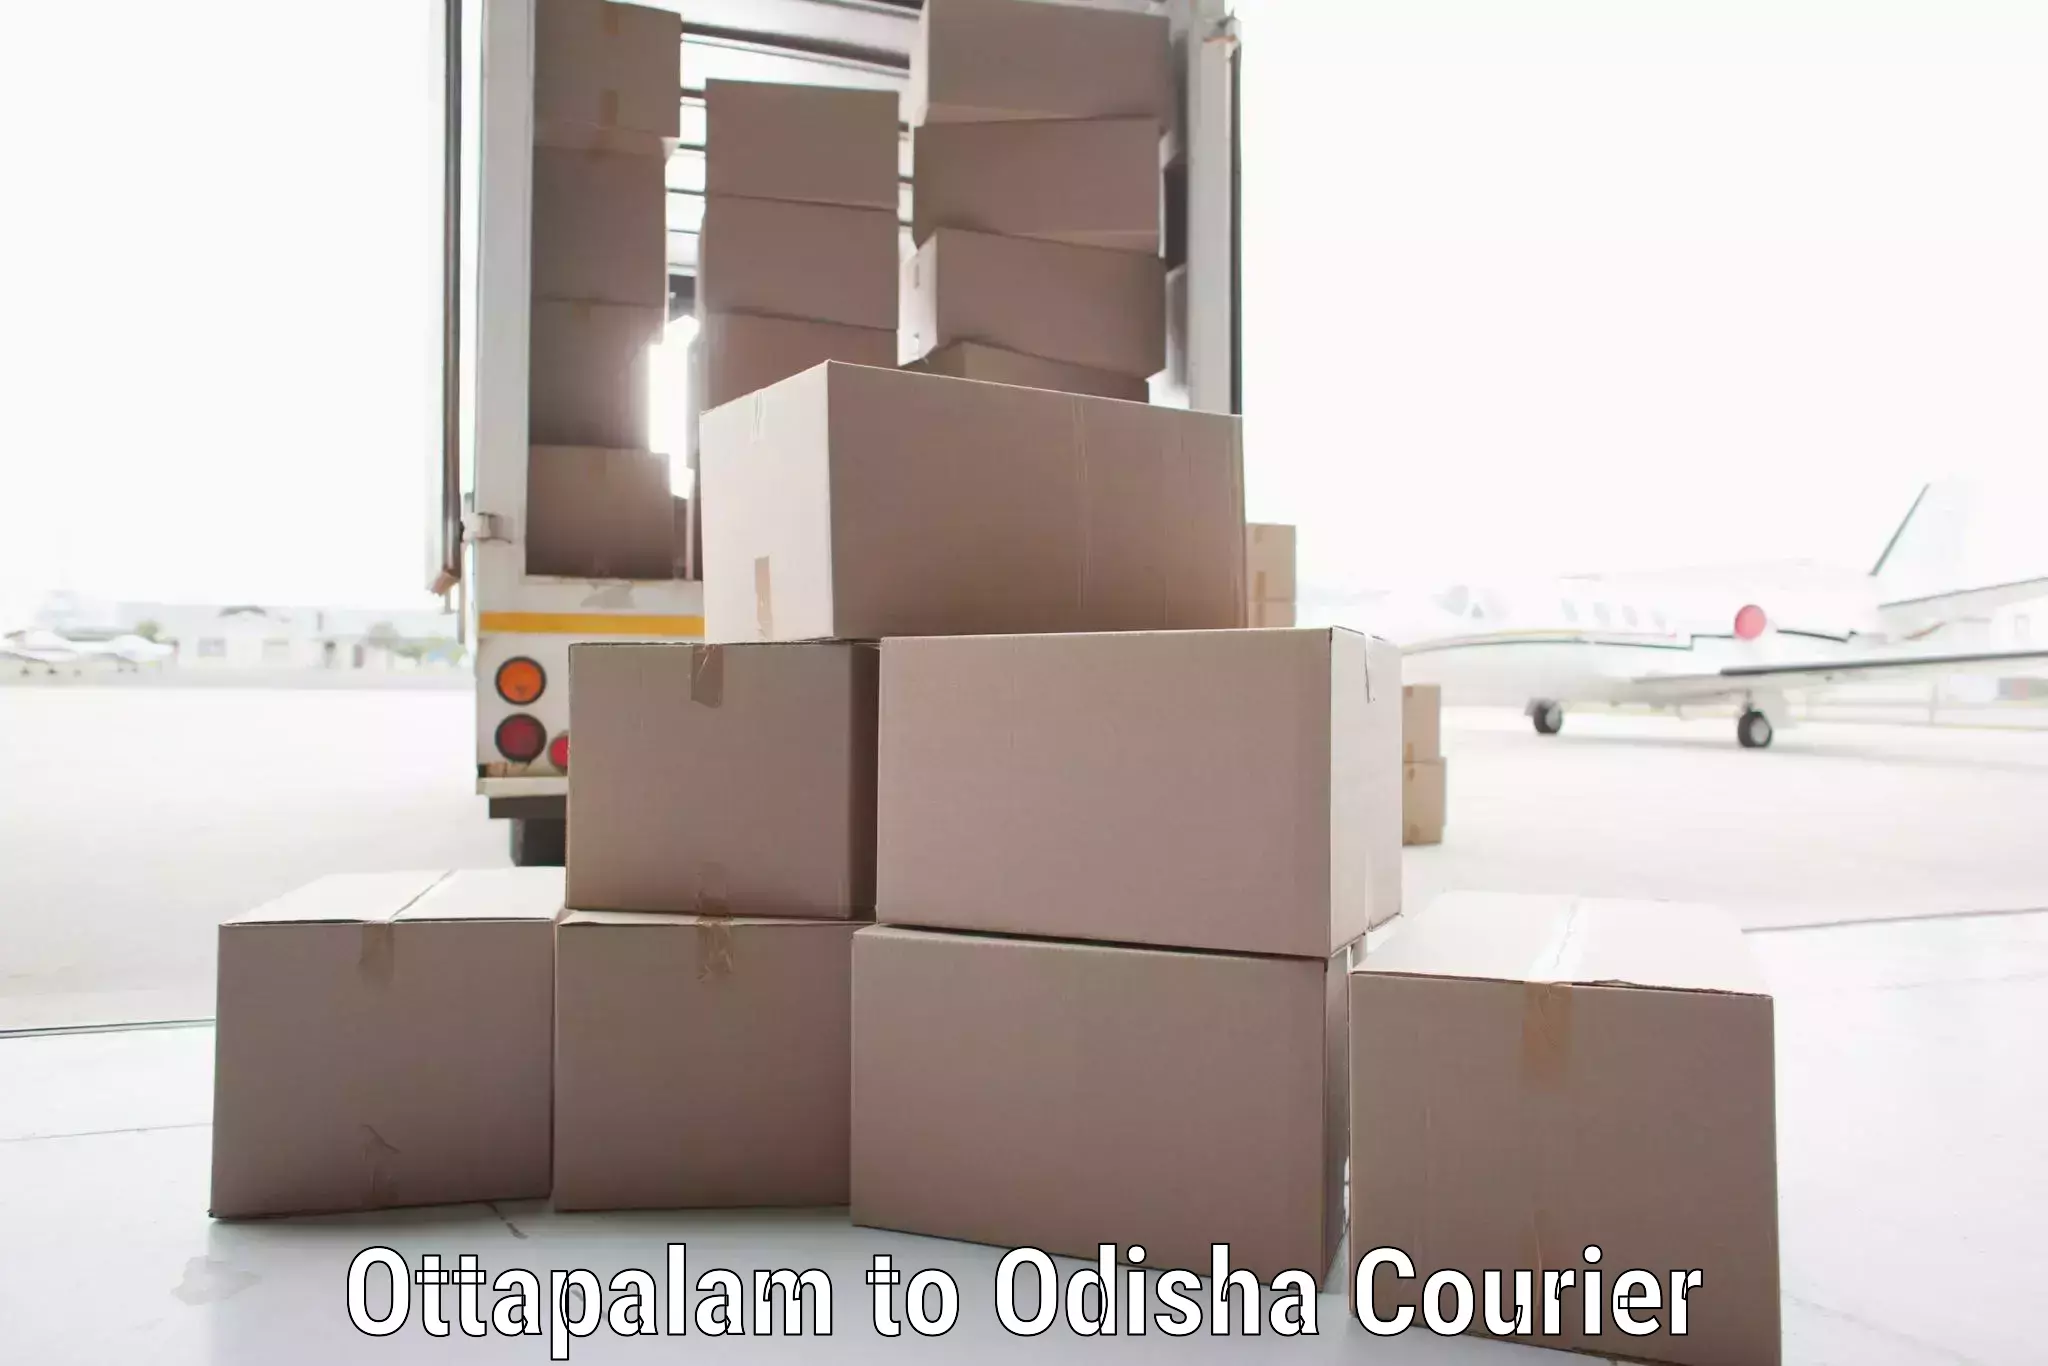 Door-to-door shipment Ottapalam to Baisinga